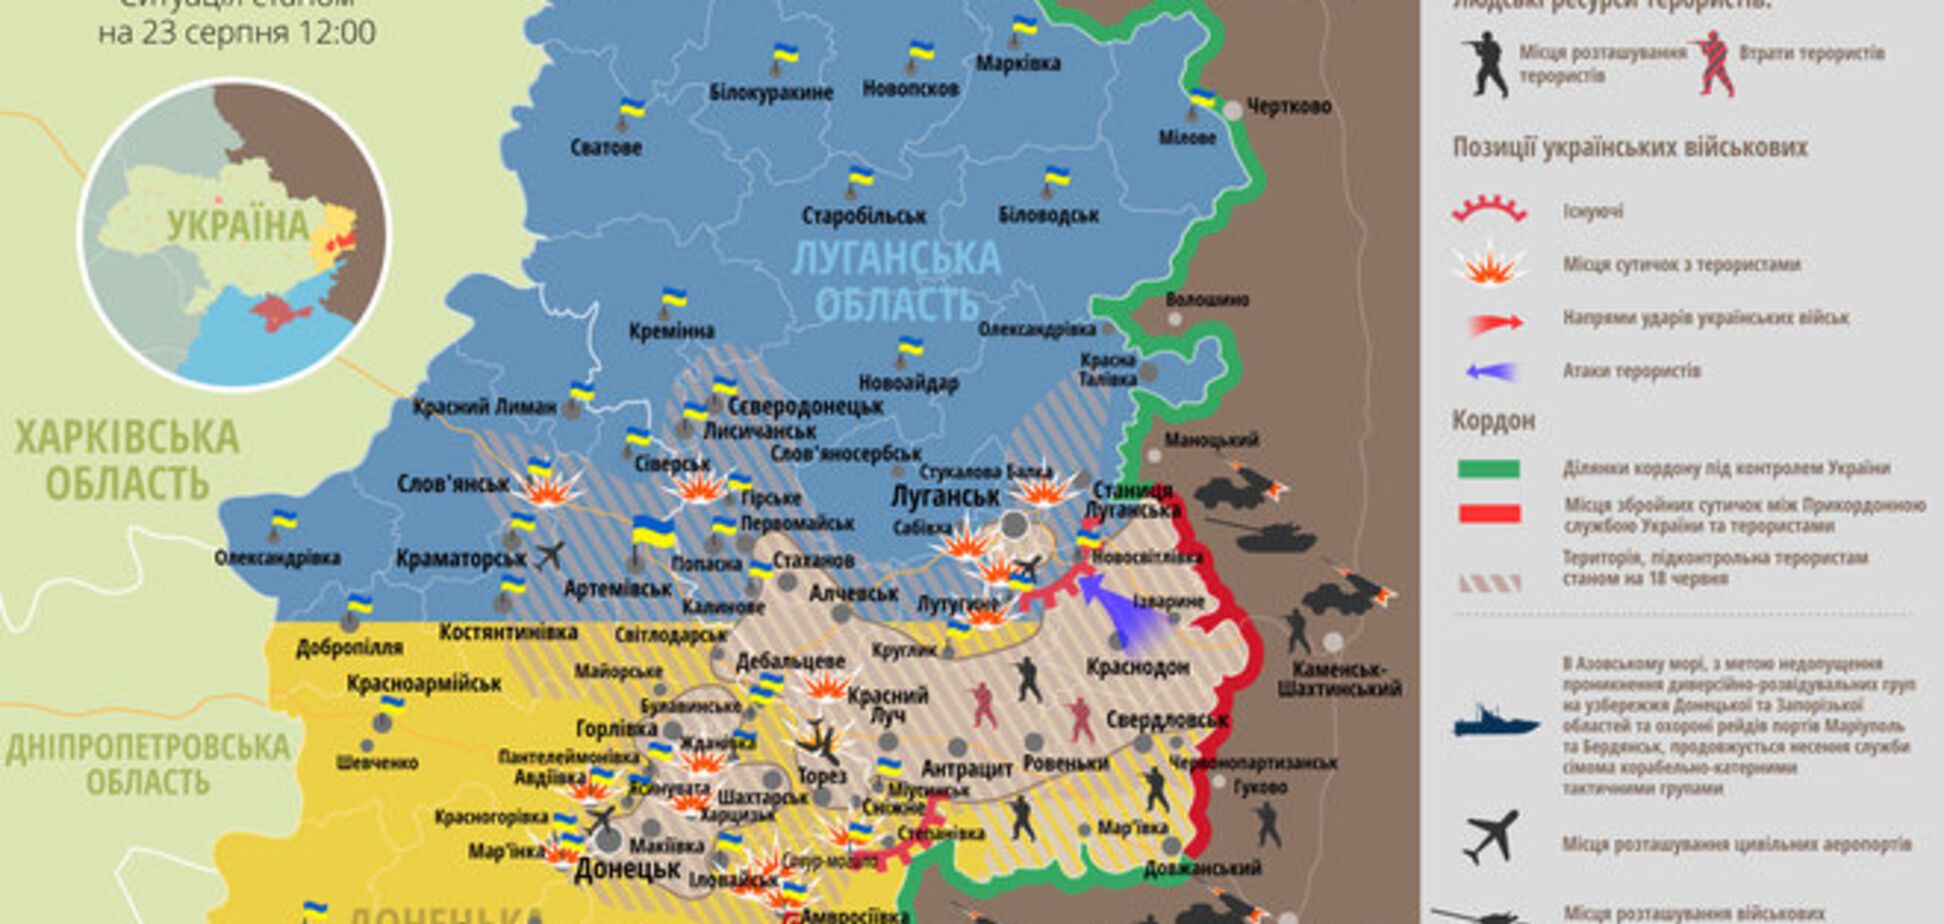 Актуальная карта ситуации на востоке Украины на 23 августа 